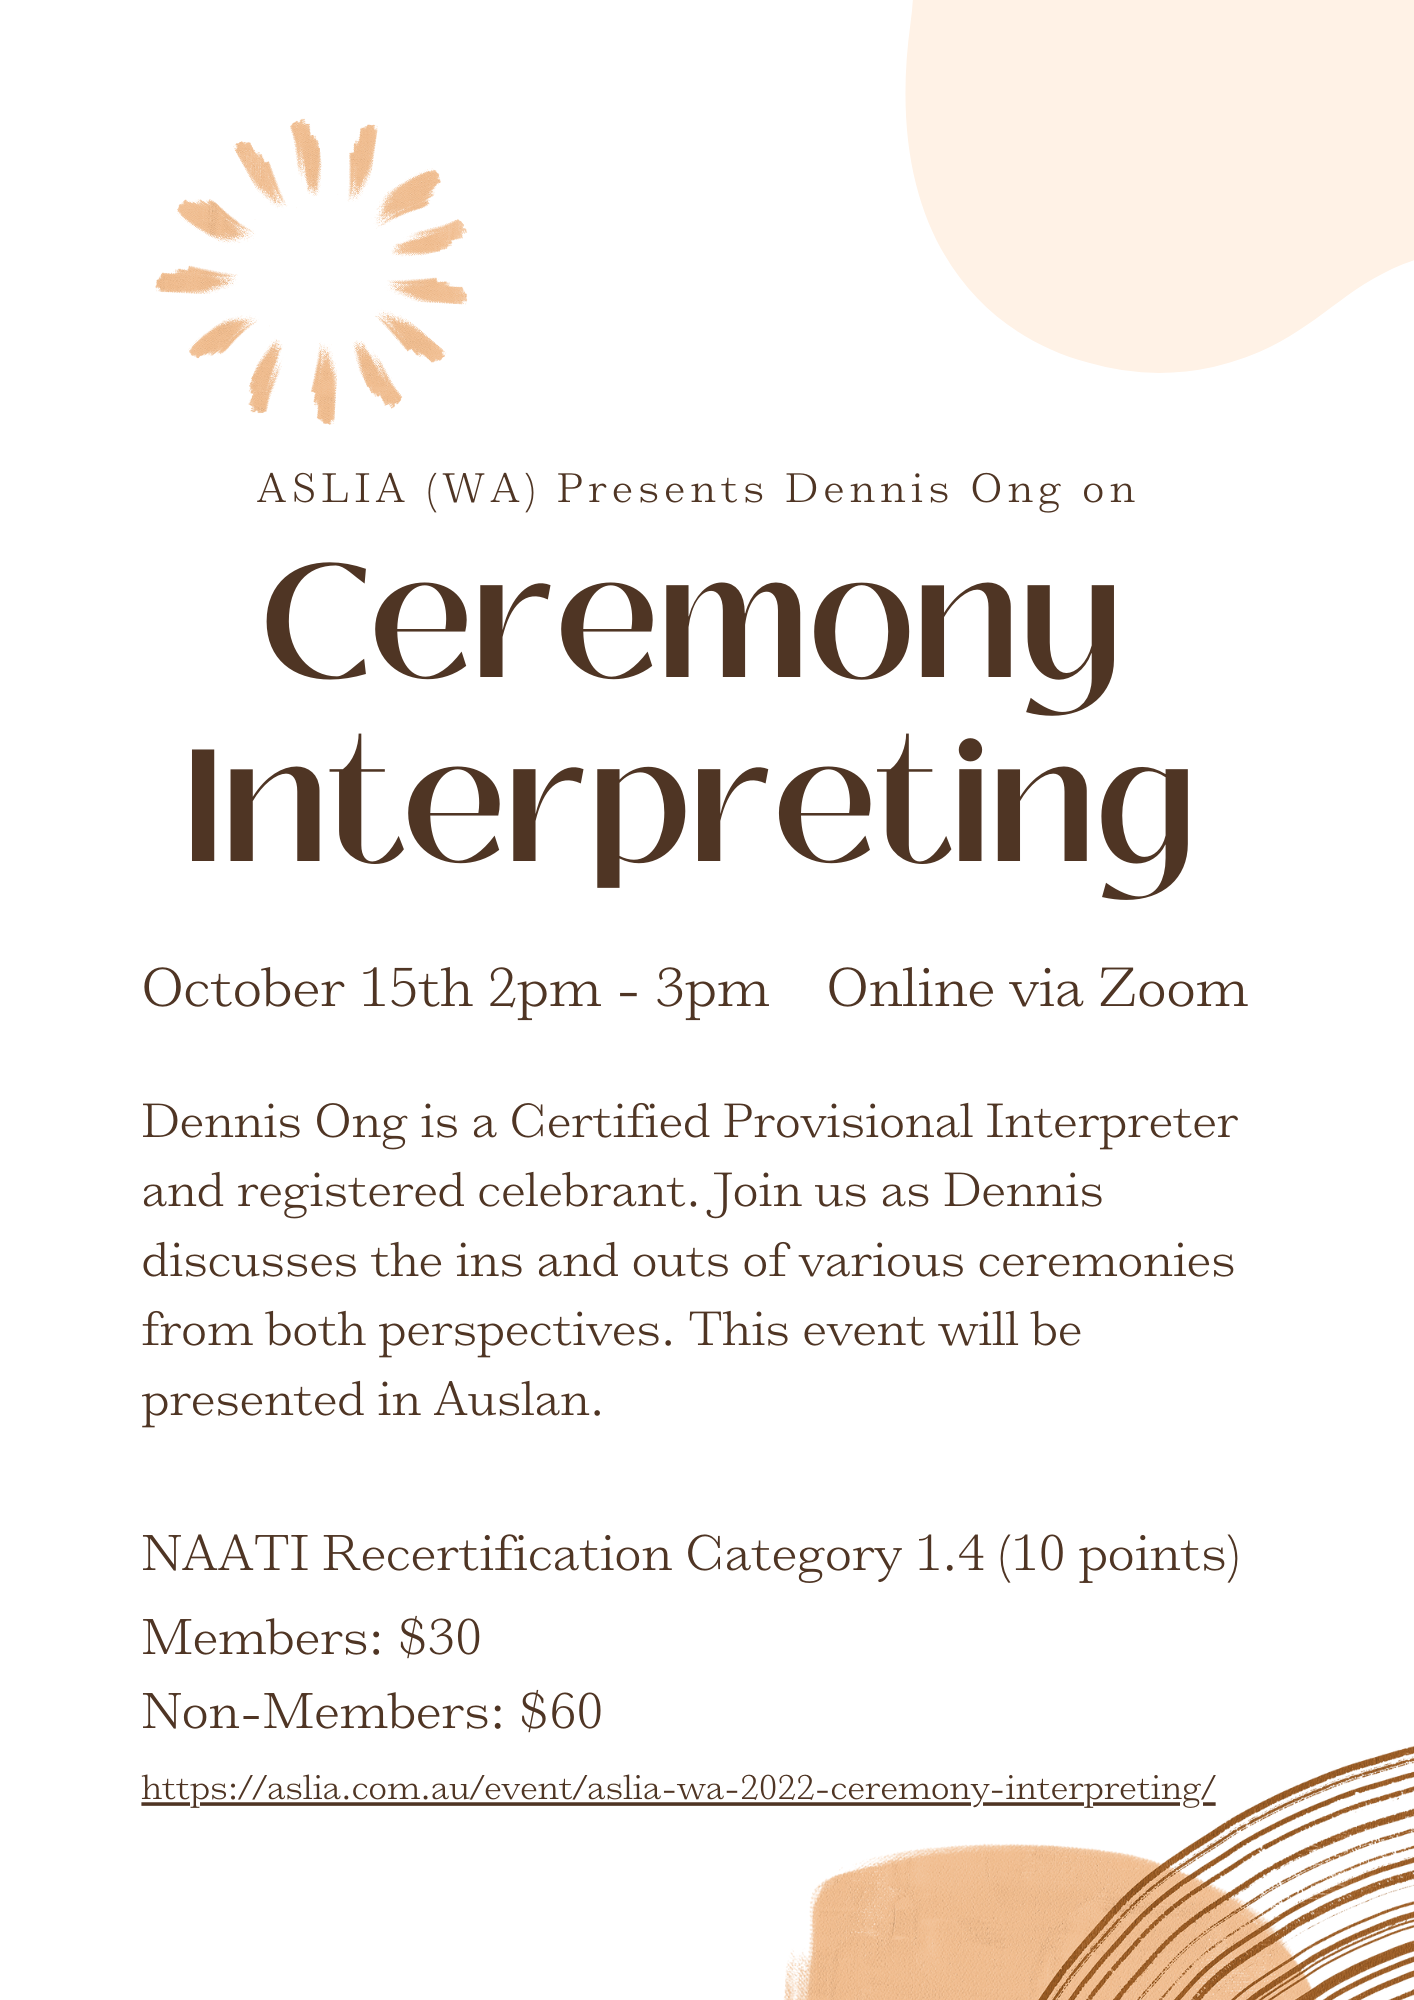 ASLIA (WA) 2022 Ceremony Interpreting